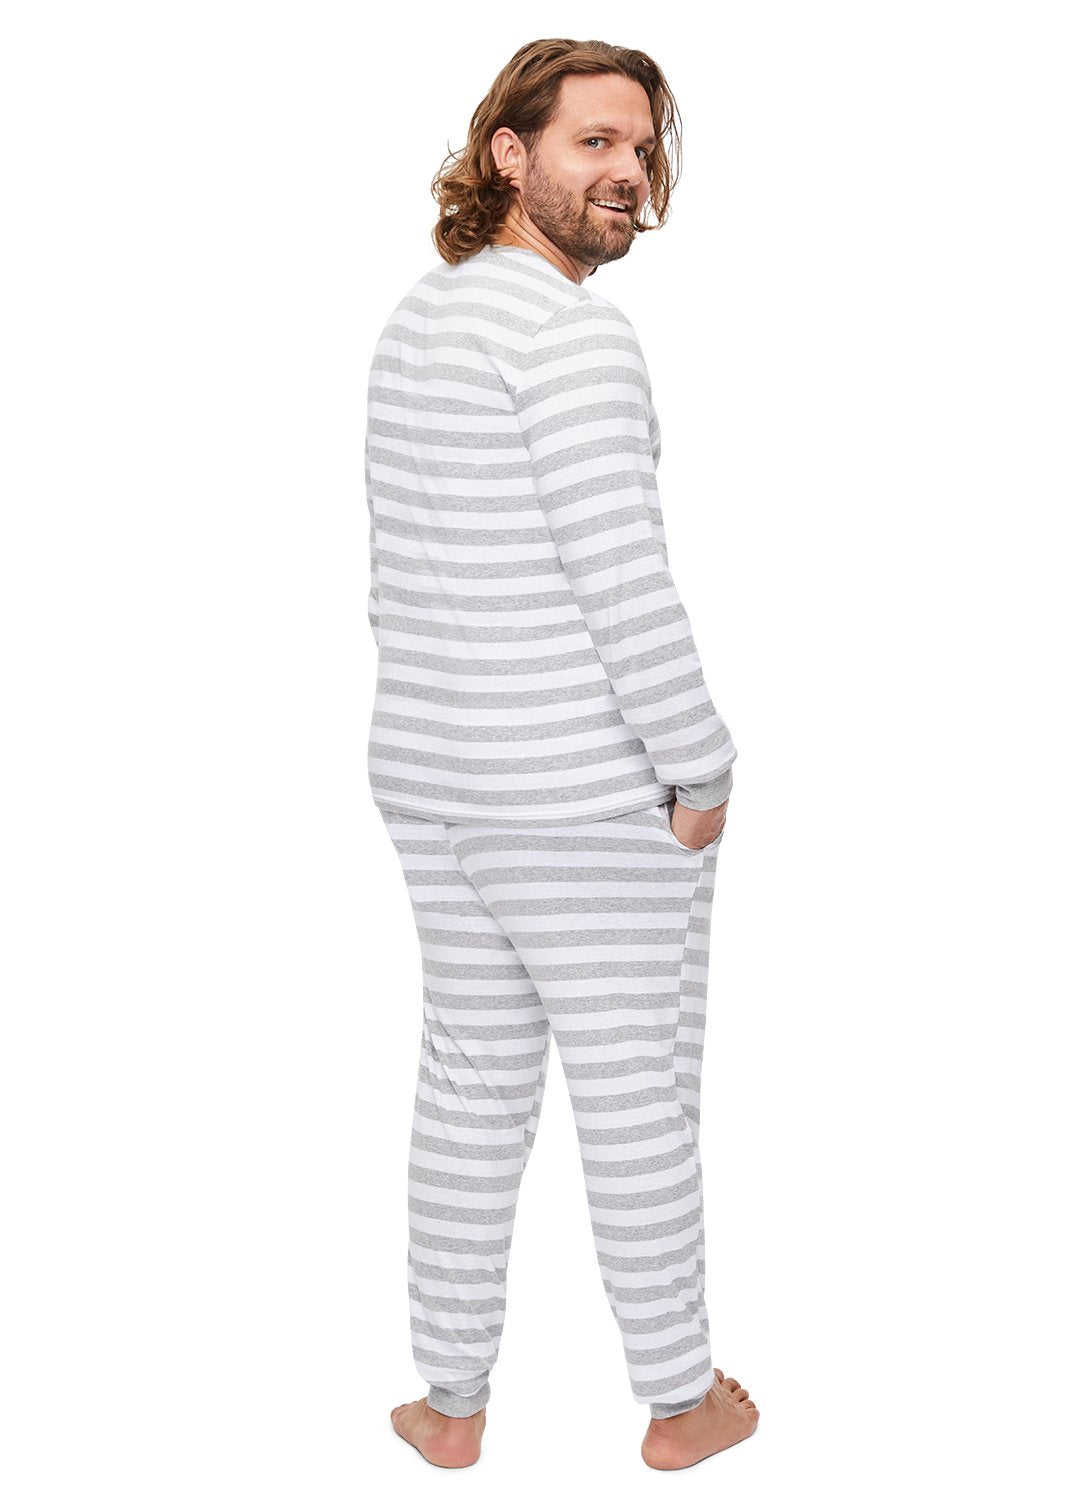 Back view Man wearing Grey Striped Sleepwear Pajama Set